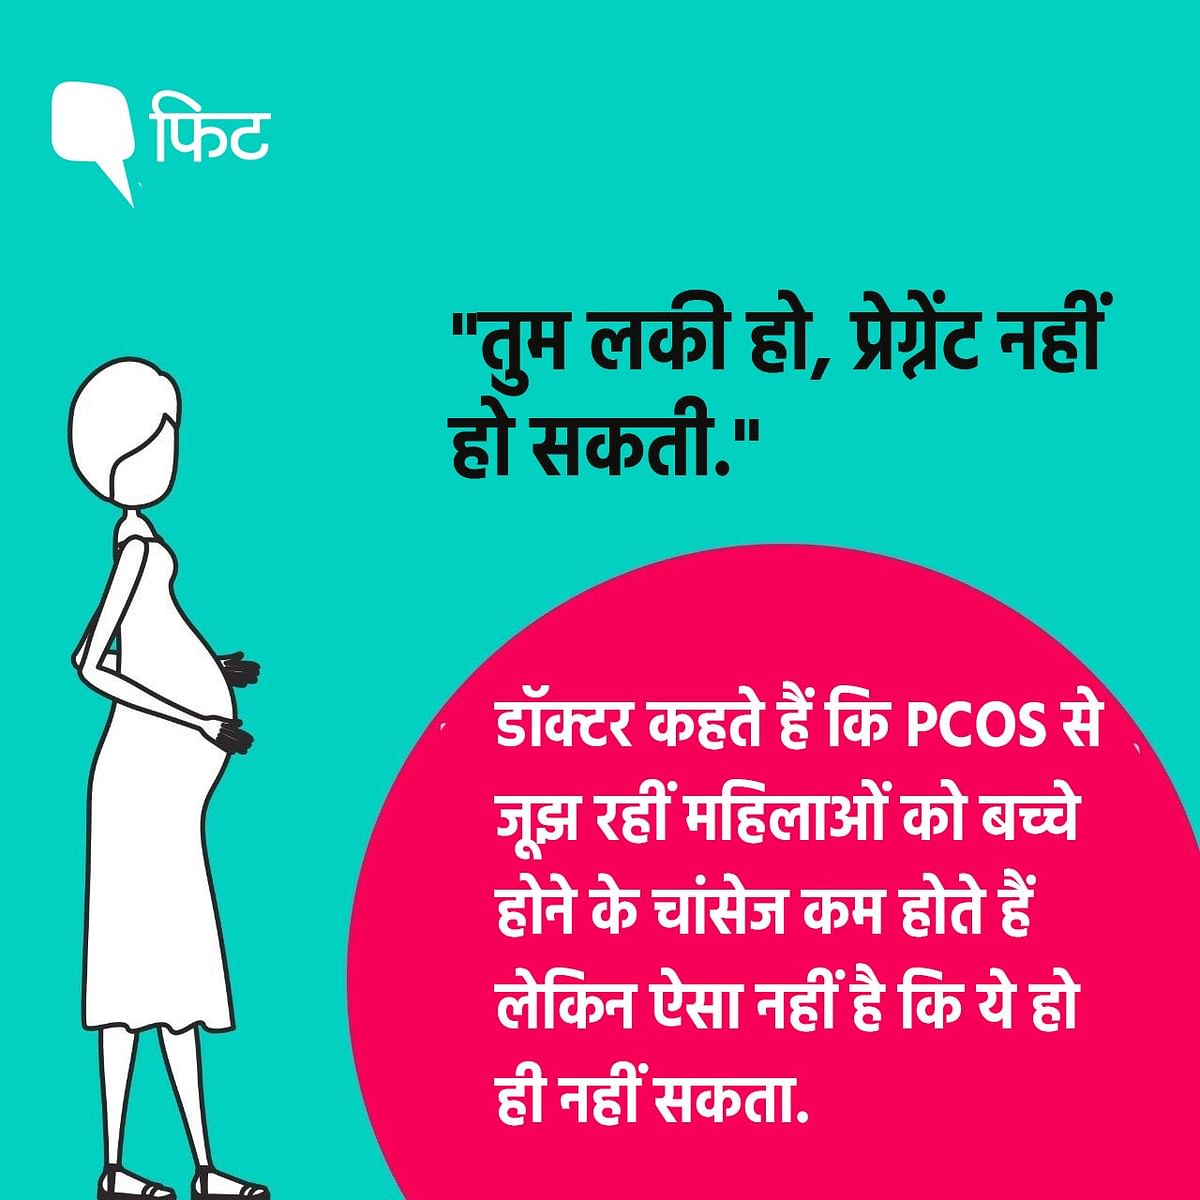 PCOS से जूझ रही महिलाओं की इन तकलीफों के बारे में जानते हैं आप?